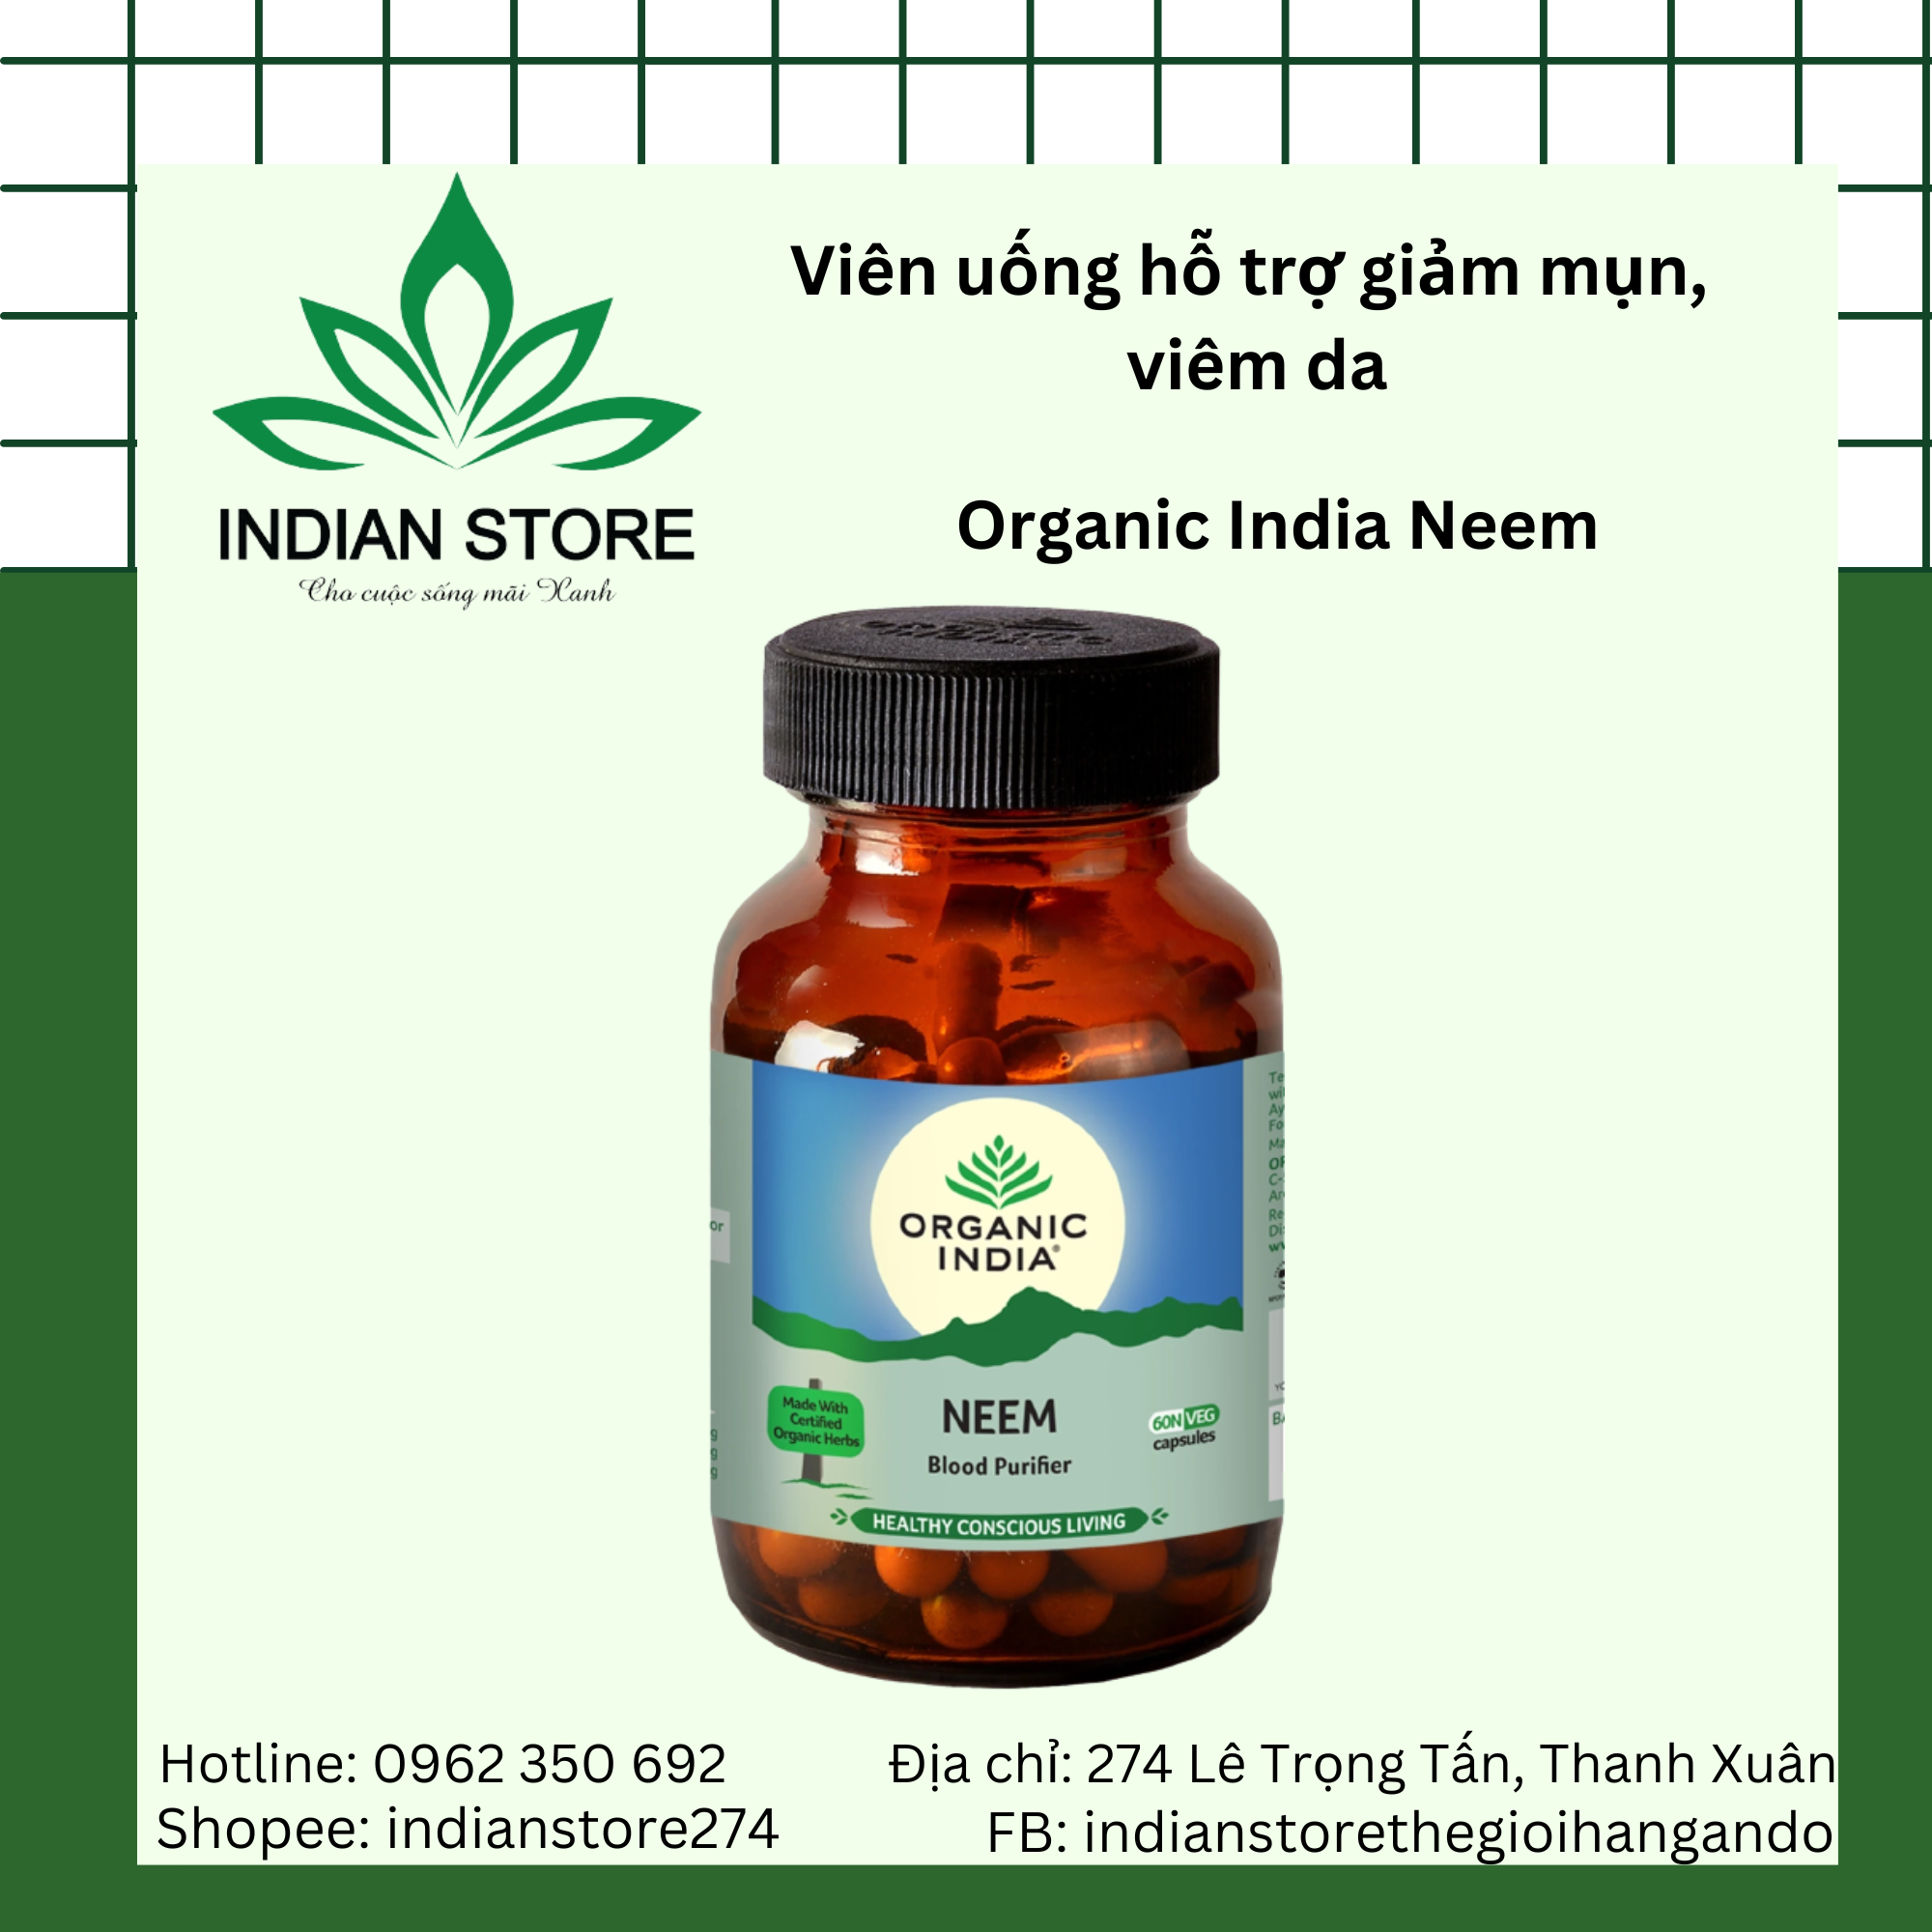 Organic India Neem- Viên uống hữu cơ hỗ trợ giảm mụn và đẹp da